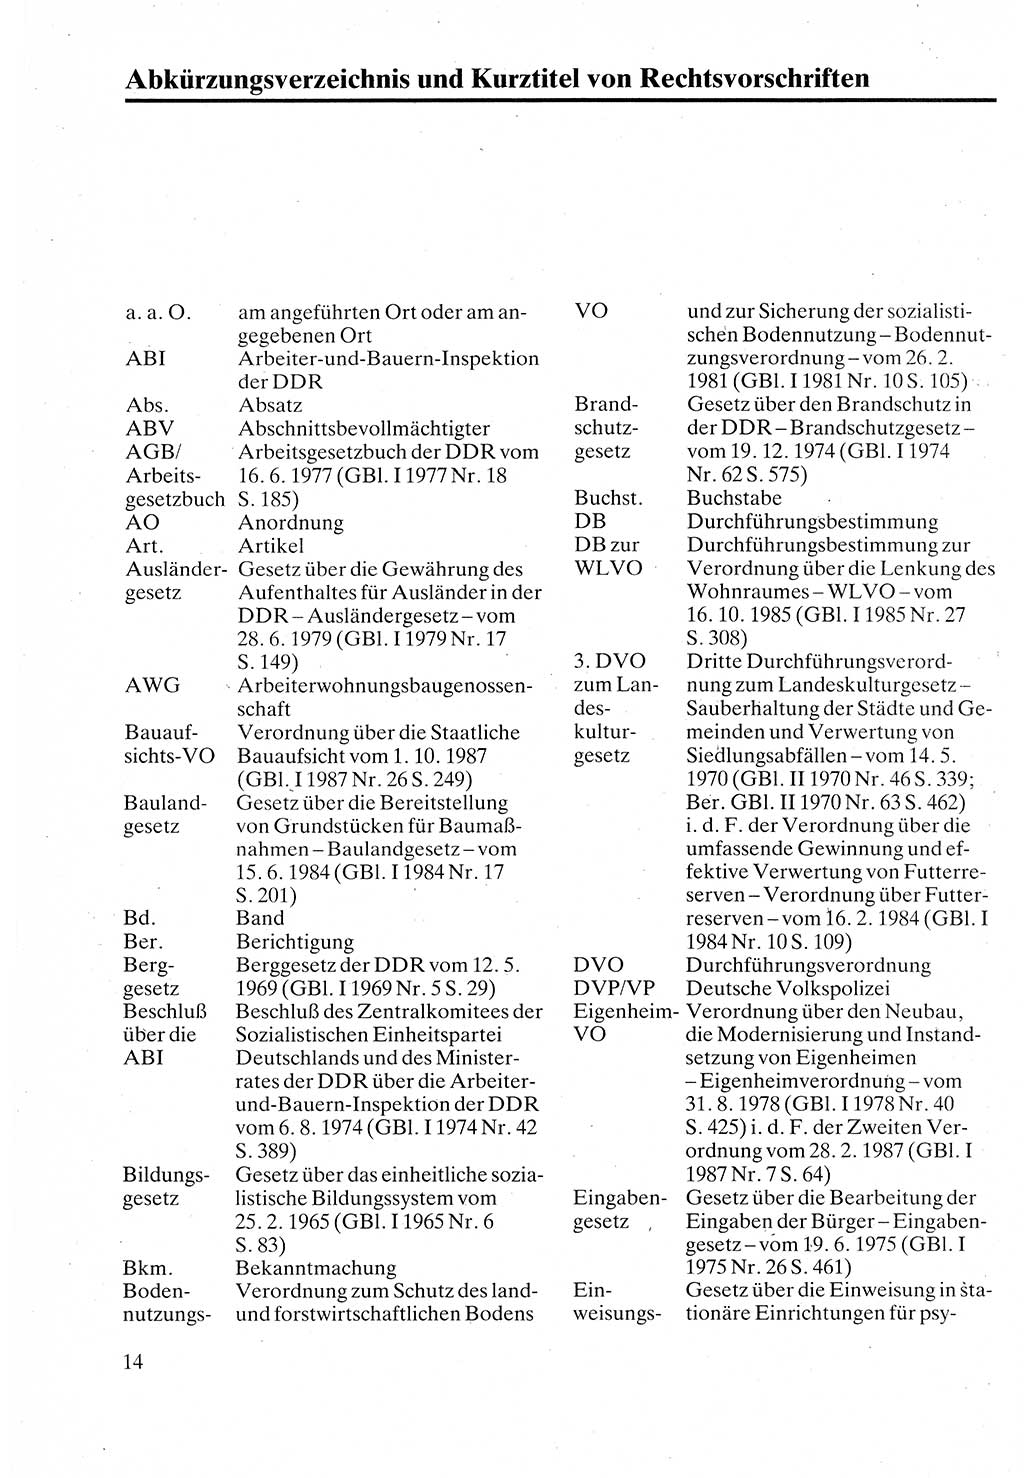 Verwaltungsrecht [Deutsche Demokratische Republik (DDR)], Lehrbuch 1988, Seite 14 (Verw.-R. DDR Lb. 1988, S. 14)